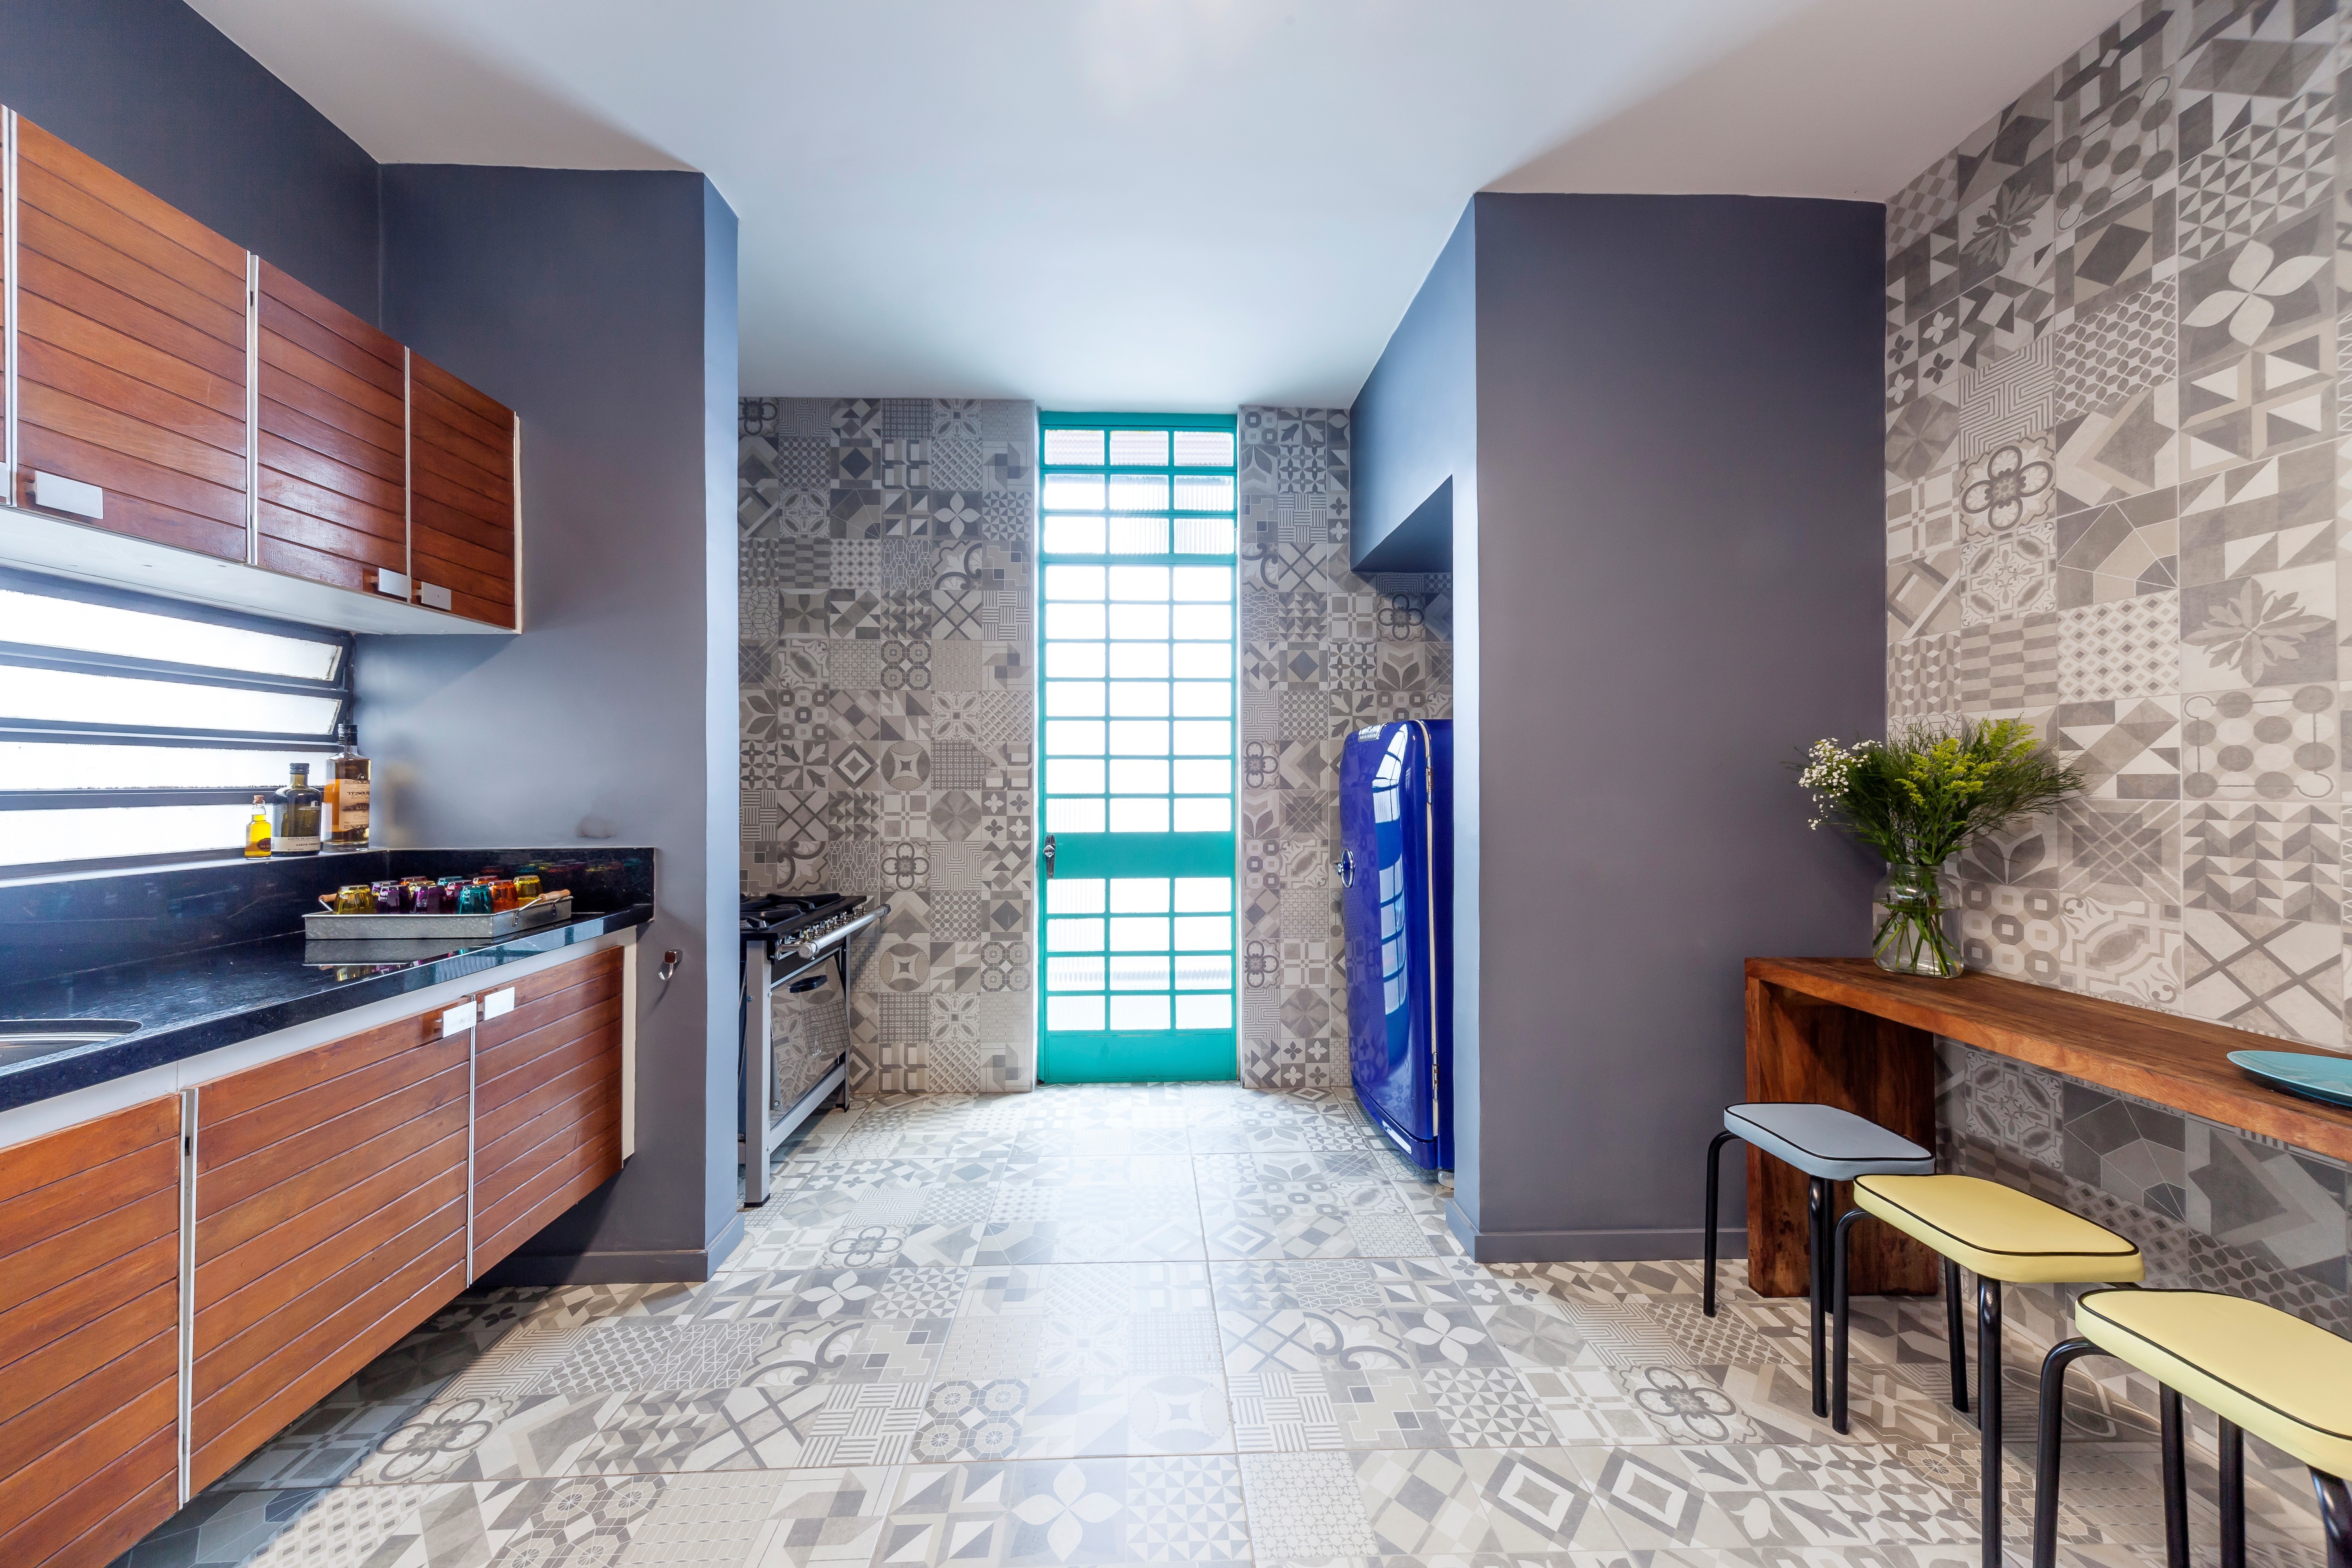 A cozinha projetada pelo arquiteto Paulo Capel utiliza revestimento porcelanato no piso e em duas paredes para criar o efeito infinito, excedendo os limites físicos do espaço (Foto: João Ribeiro)